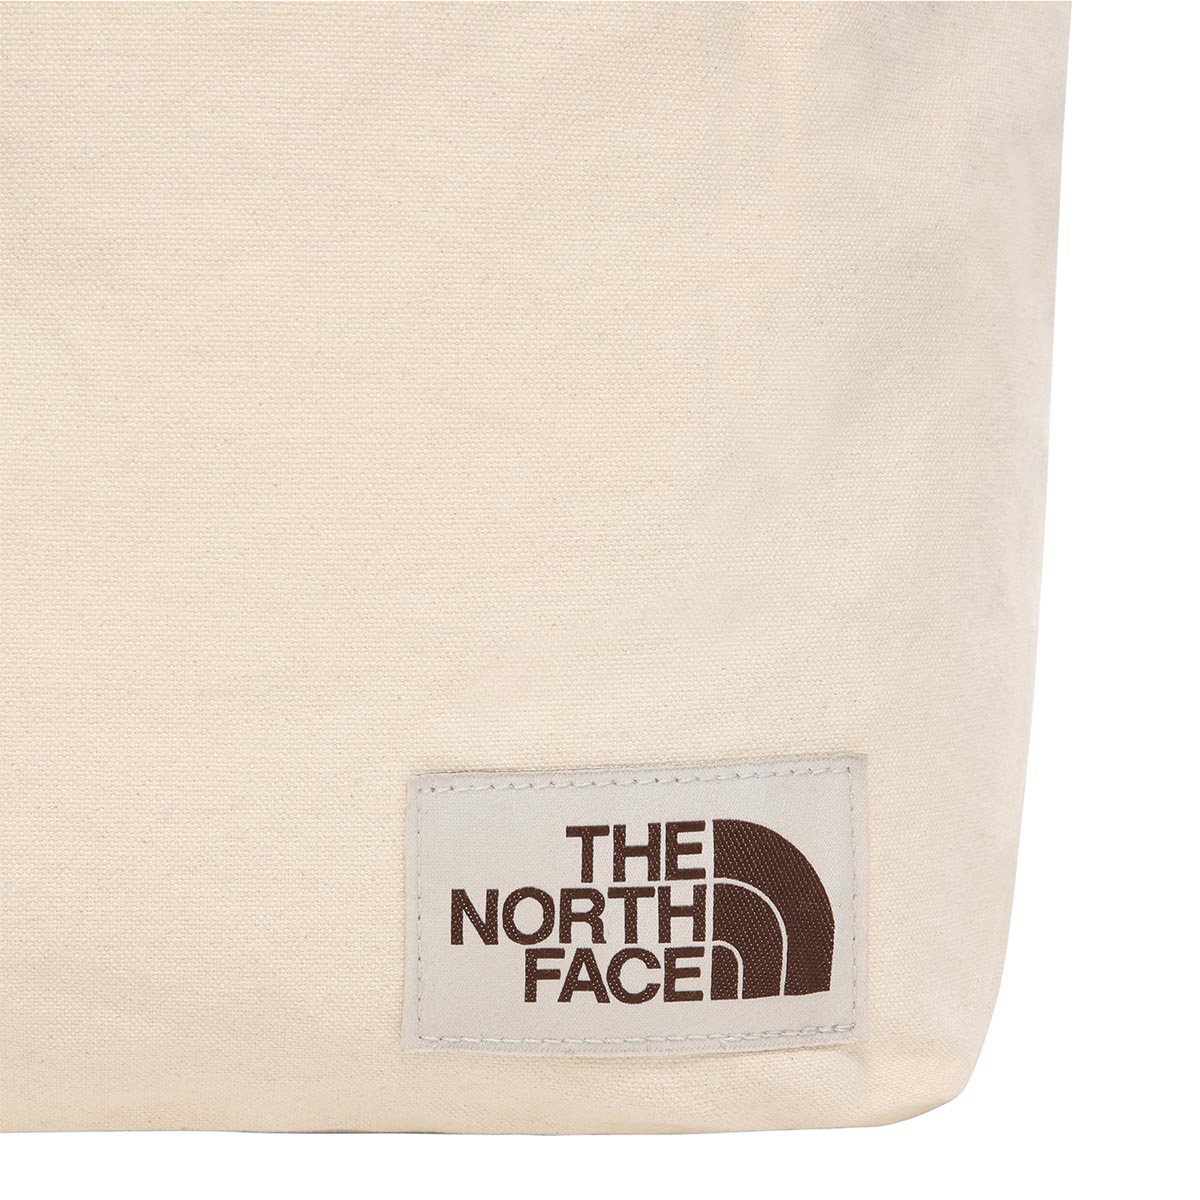 THE NORTH FACE - COTTON TOTE BAG 17 L